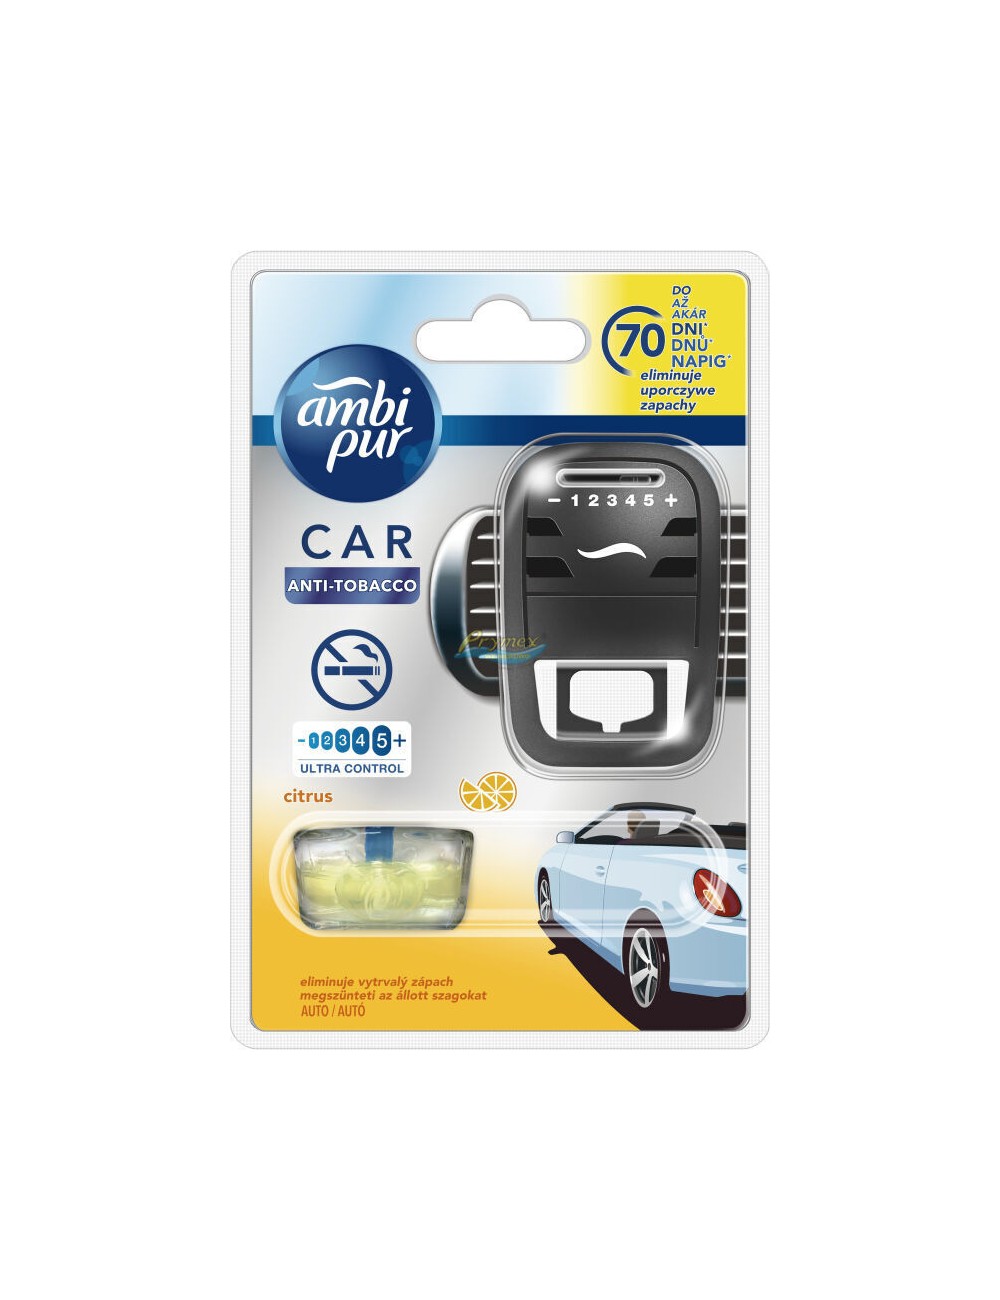 Ambi Pur Car Anti-Tobacco Citrus Samochodowy Odświeżacz Powietrza (urządzenie + wkład 7 ml) 1 szt 